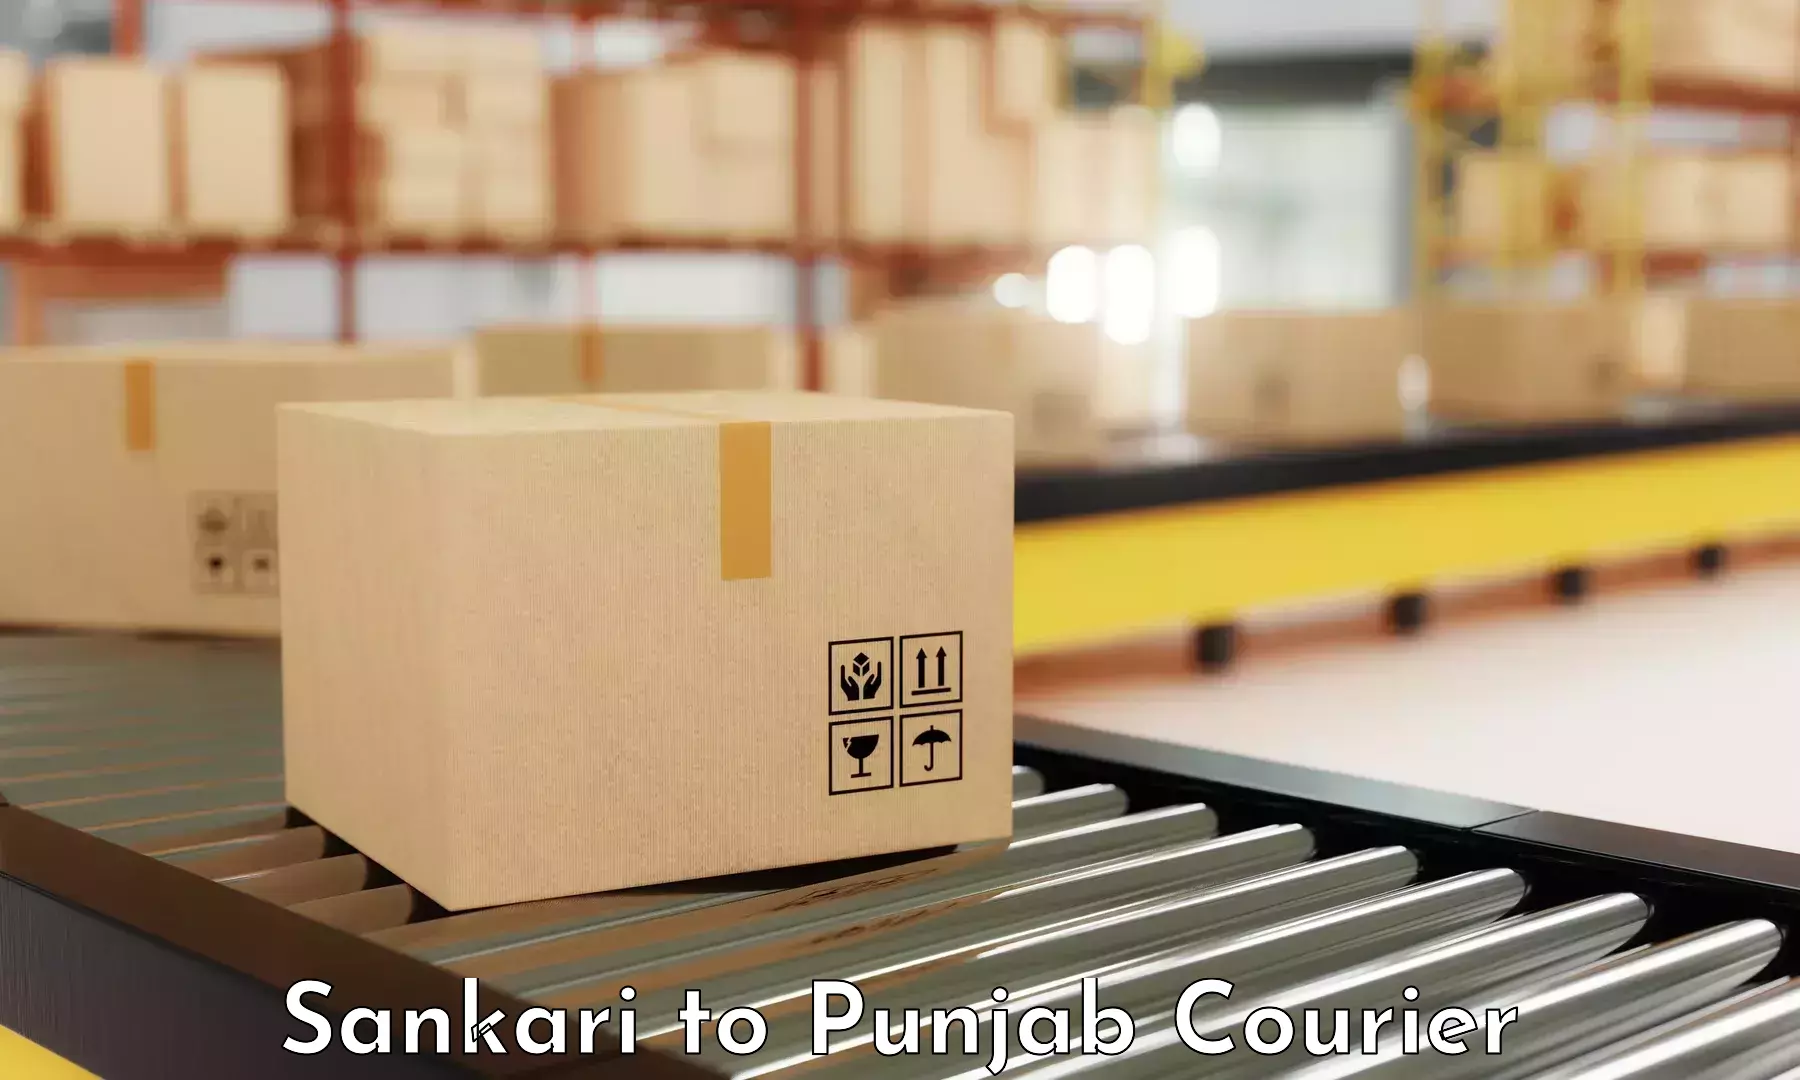 User-friendly courier app Sankari to Raikot